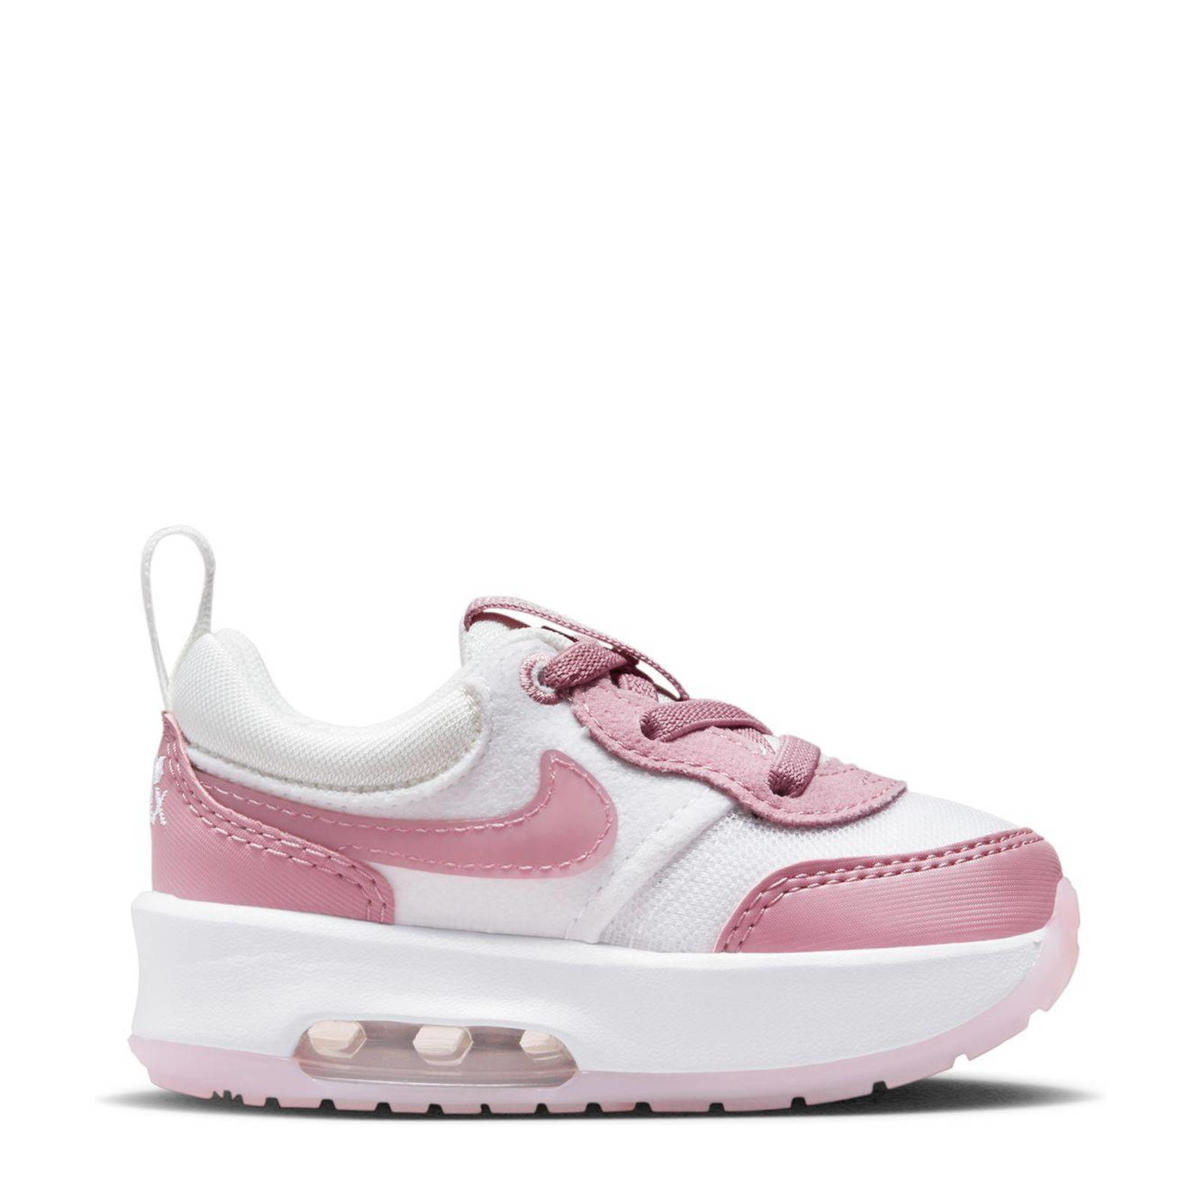 Banket Grote waanidee Melancholie Nike Air Max Motif sneakers wit/roze | wehkamp